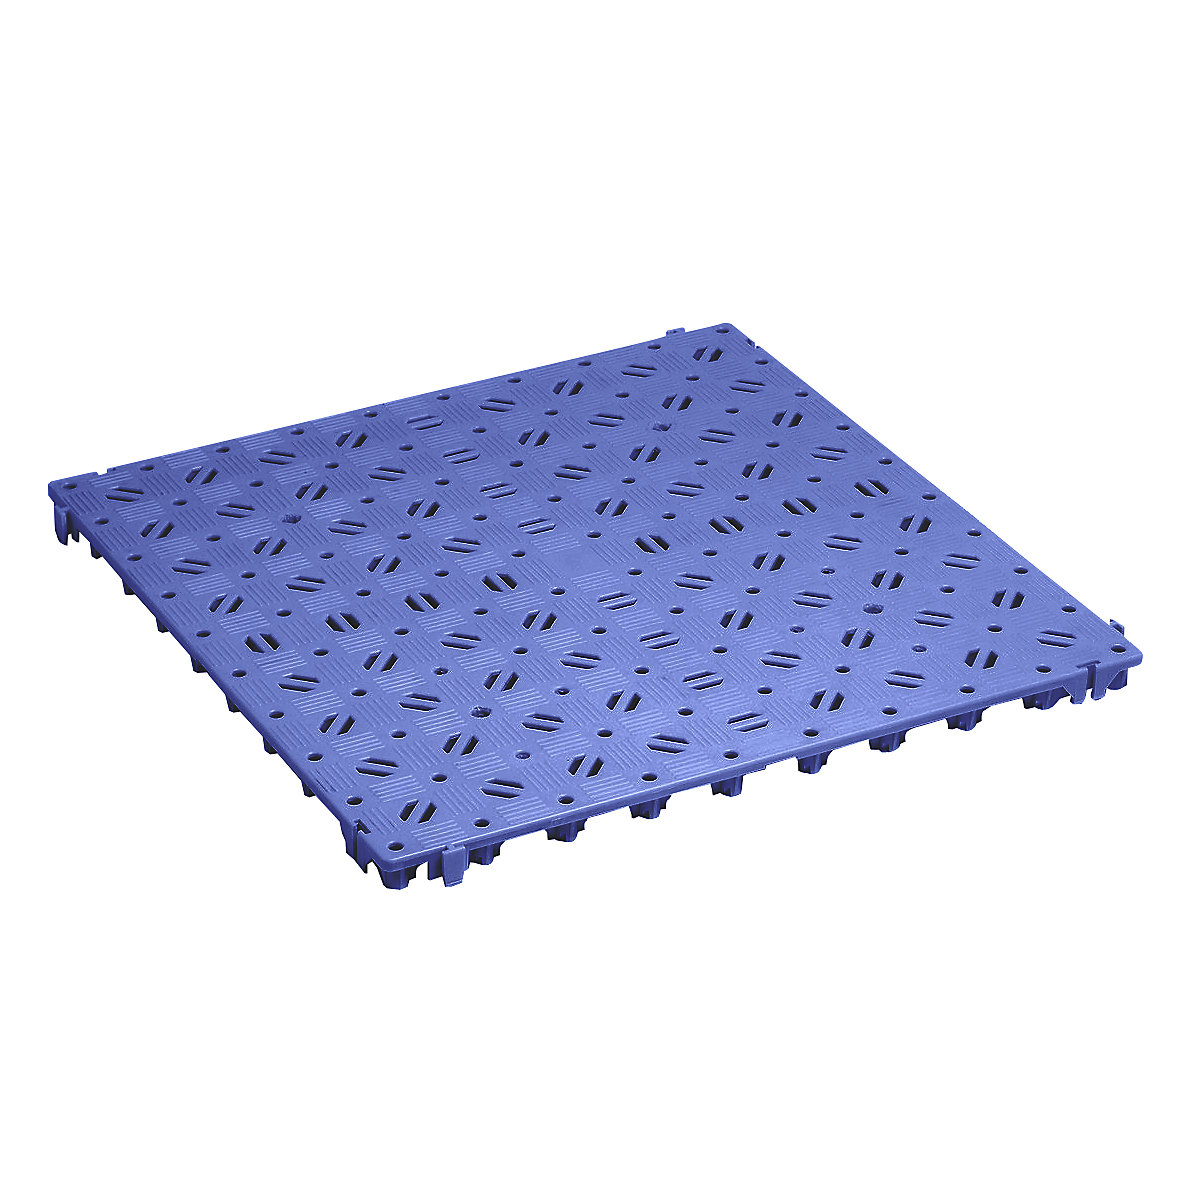 Kunststoff-Bodenrost, Polyethylen, 500 x 500 mm, stabil, VE 20 Stk, blau